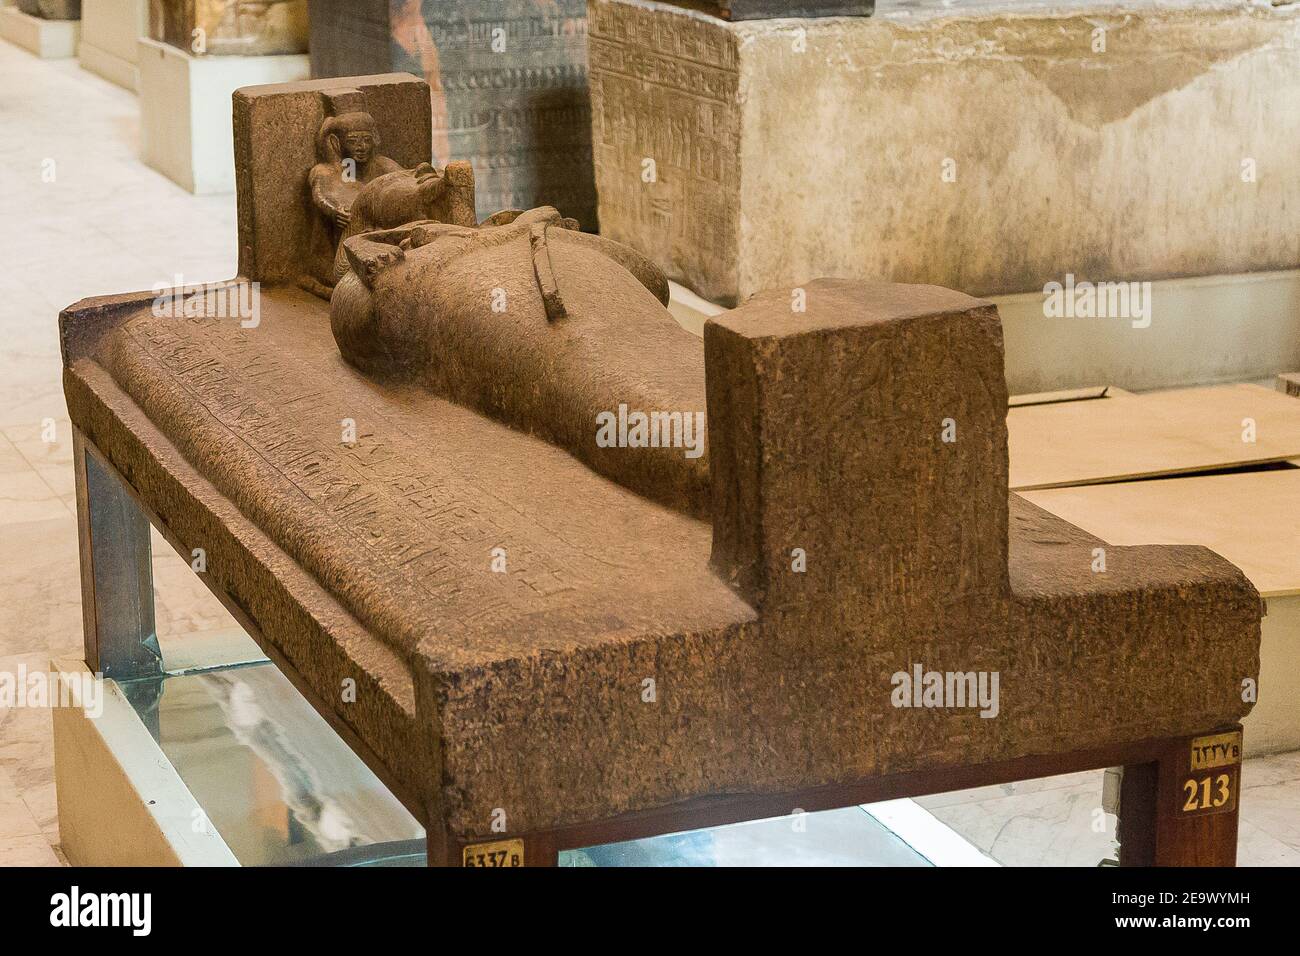 Ägypten, Kairo, Ägyptisches Museum, Granit äußeren Sarkophag von König Psusennes I, wiederverwendet von König Merenptah. Gefunden in der königlichen Nekropole von Tanis. Stockfoto